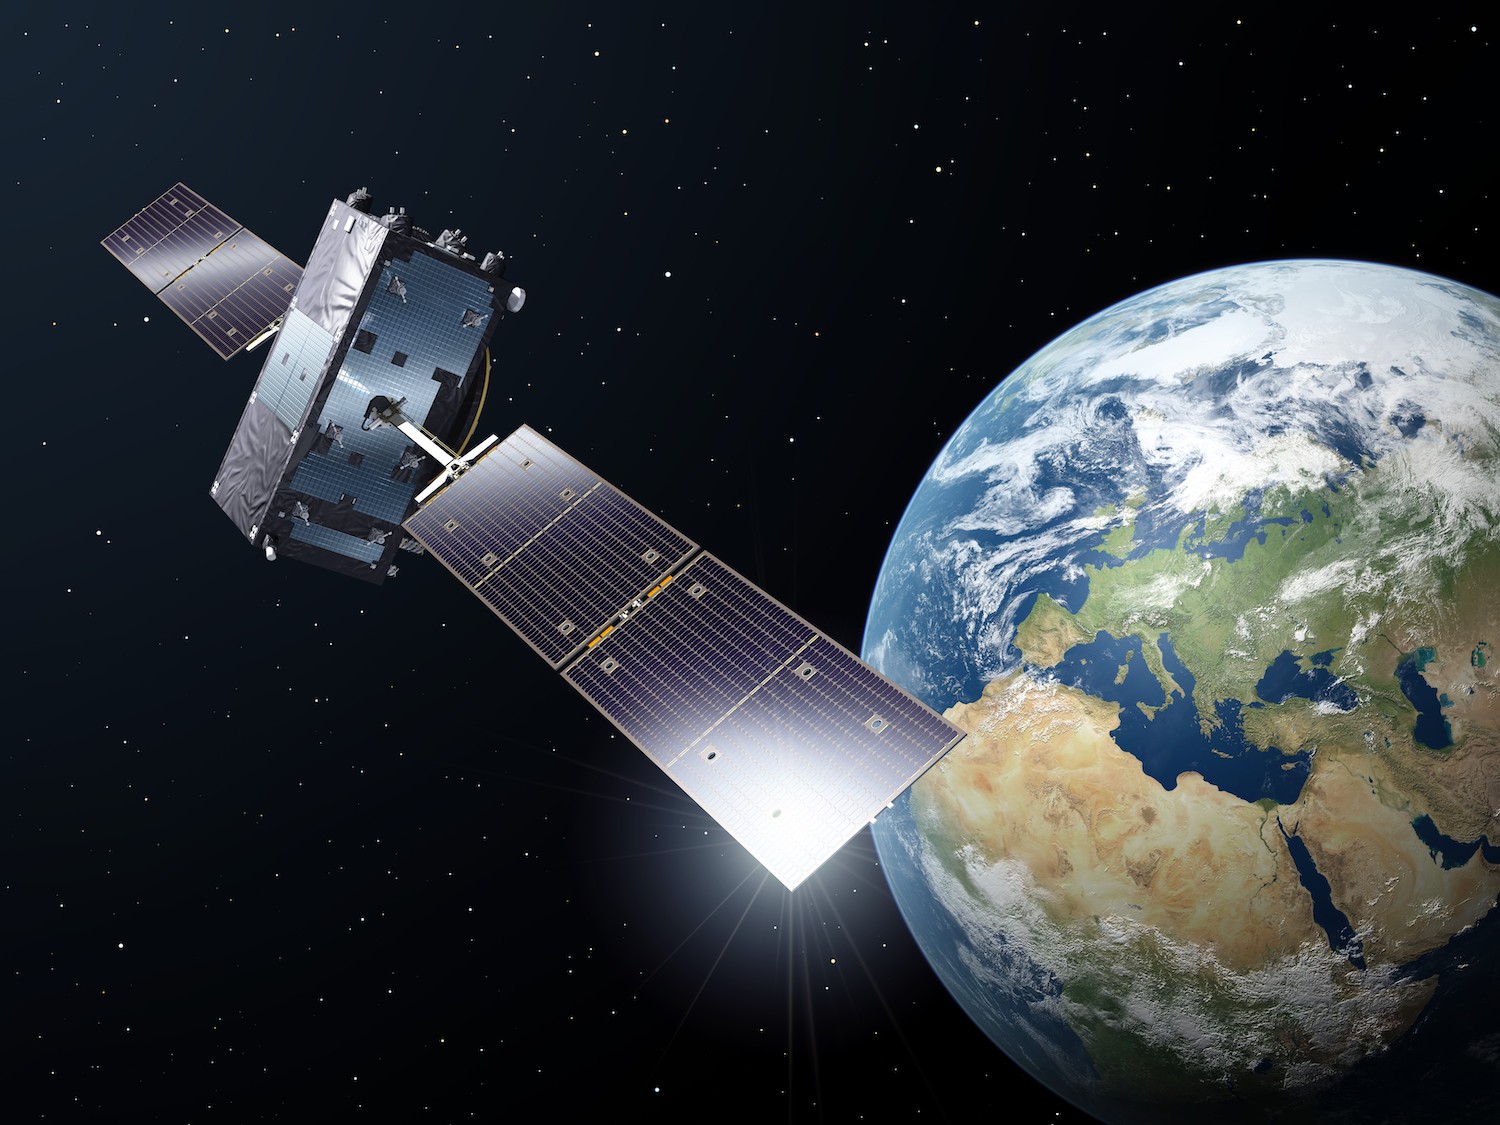 L'ESA passa alla seconda generazione di satelliti Galileo, più potenti e riconfigurabili